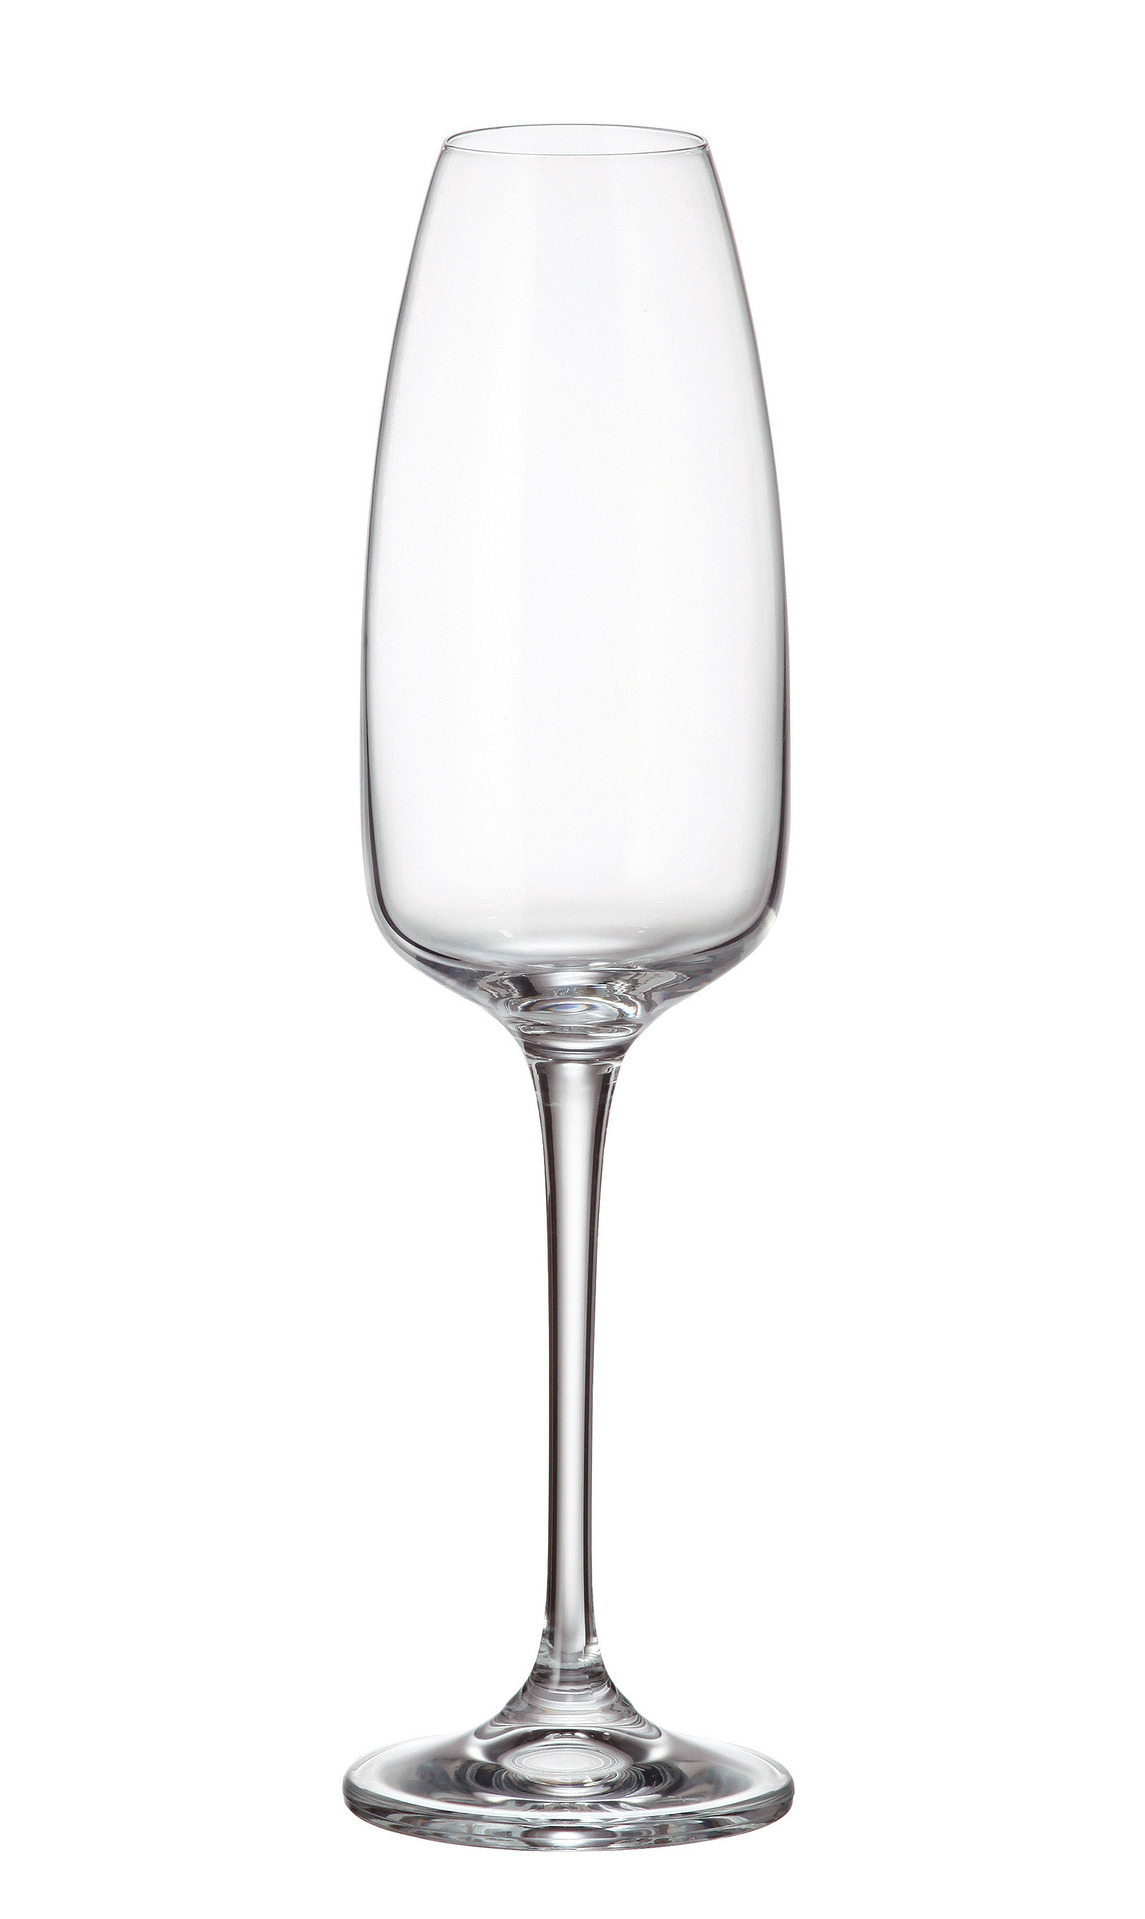 Crystalite Bohemia sklenice na šampaňské Anser 290 ml 6KS